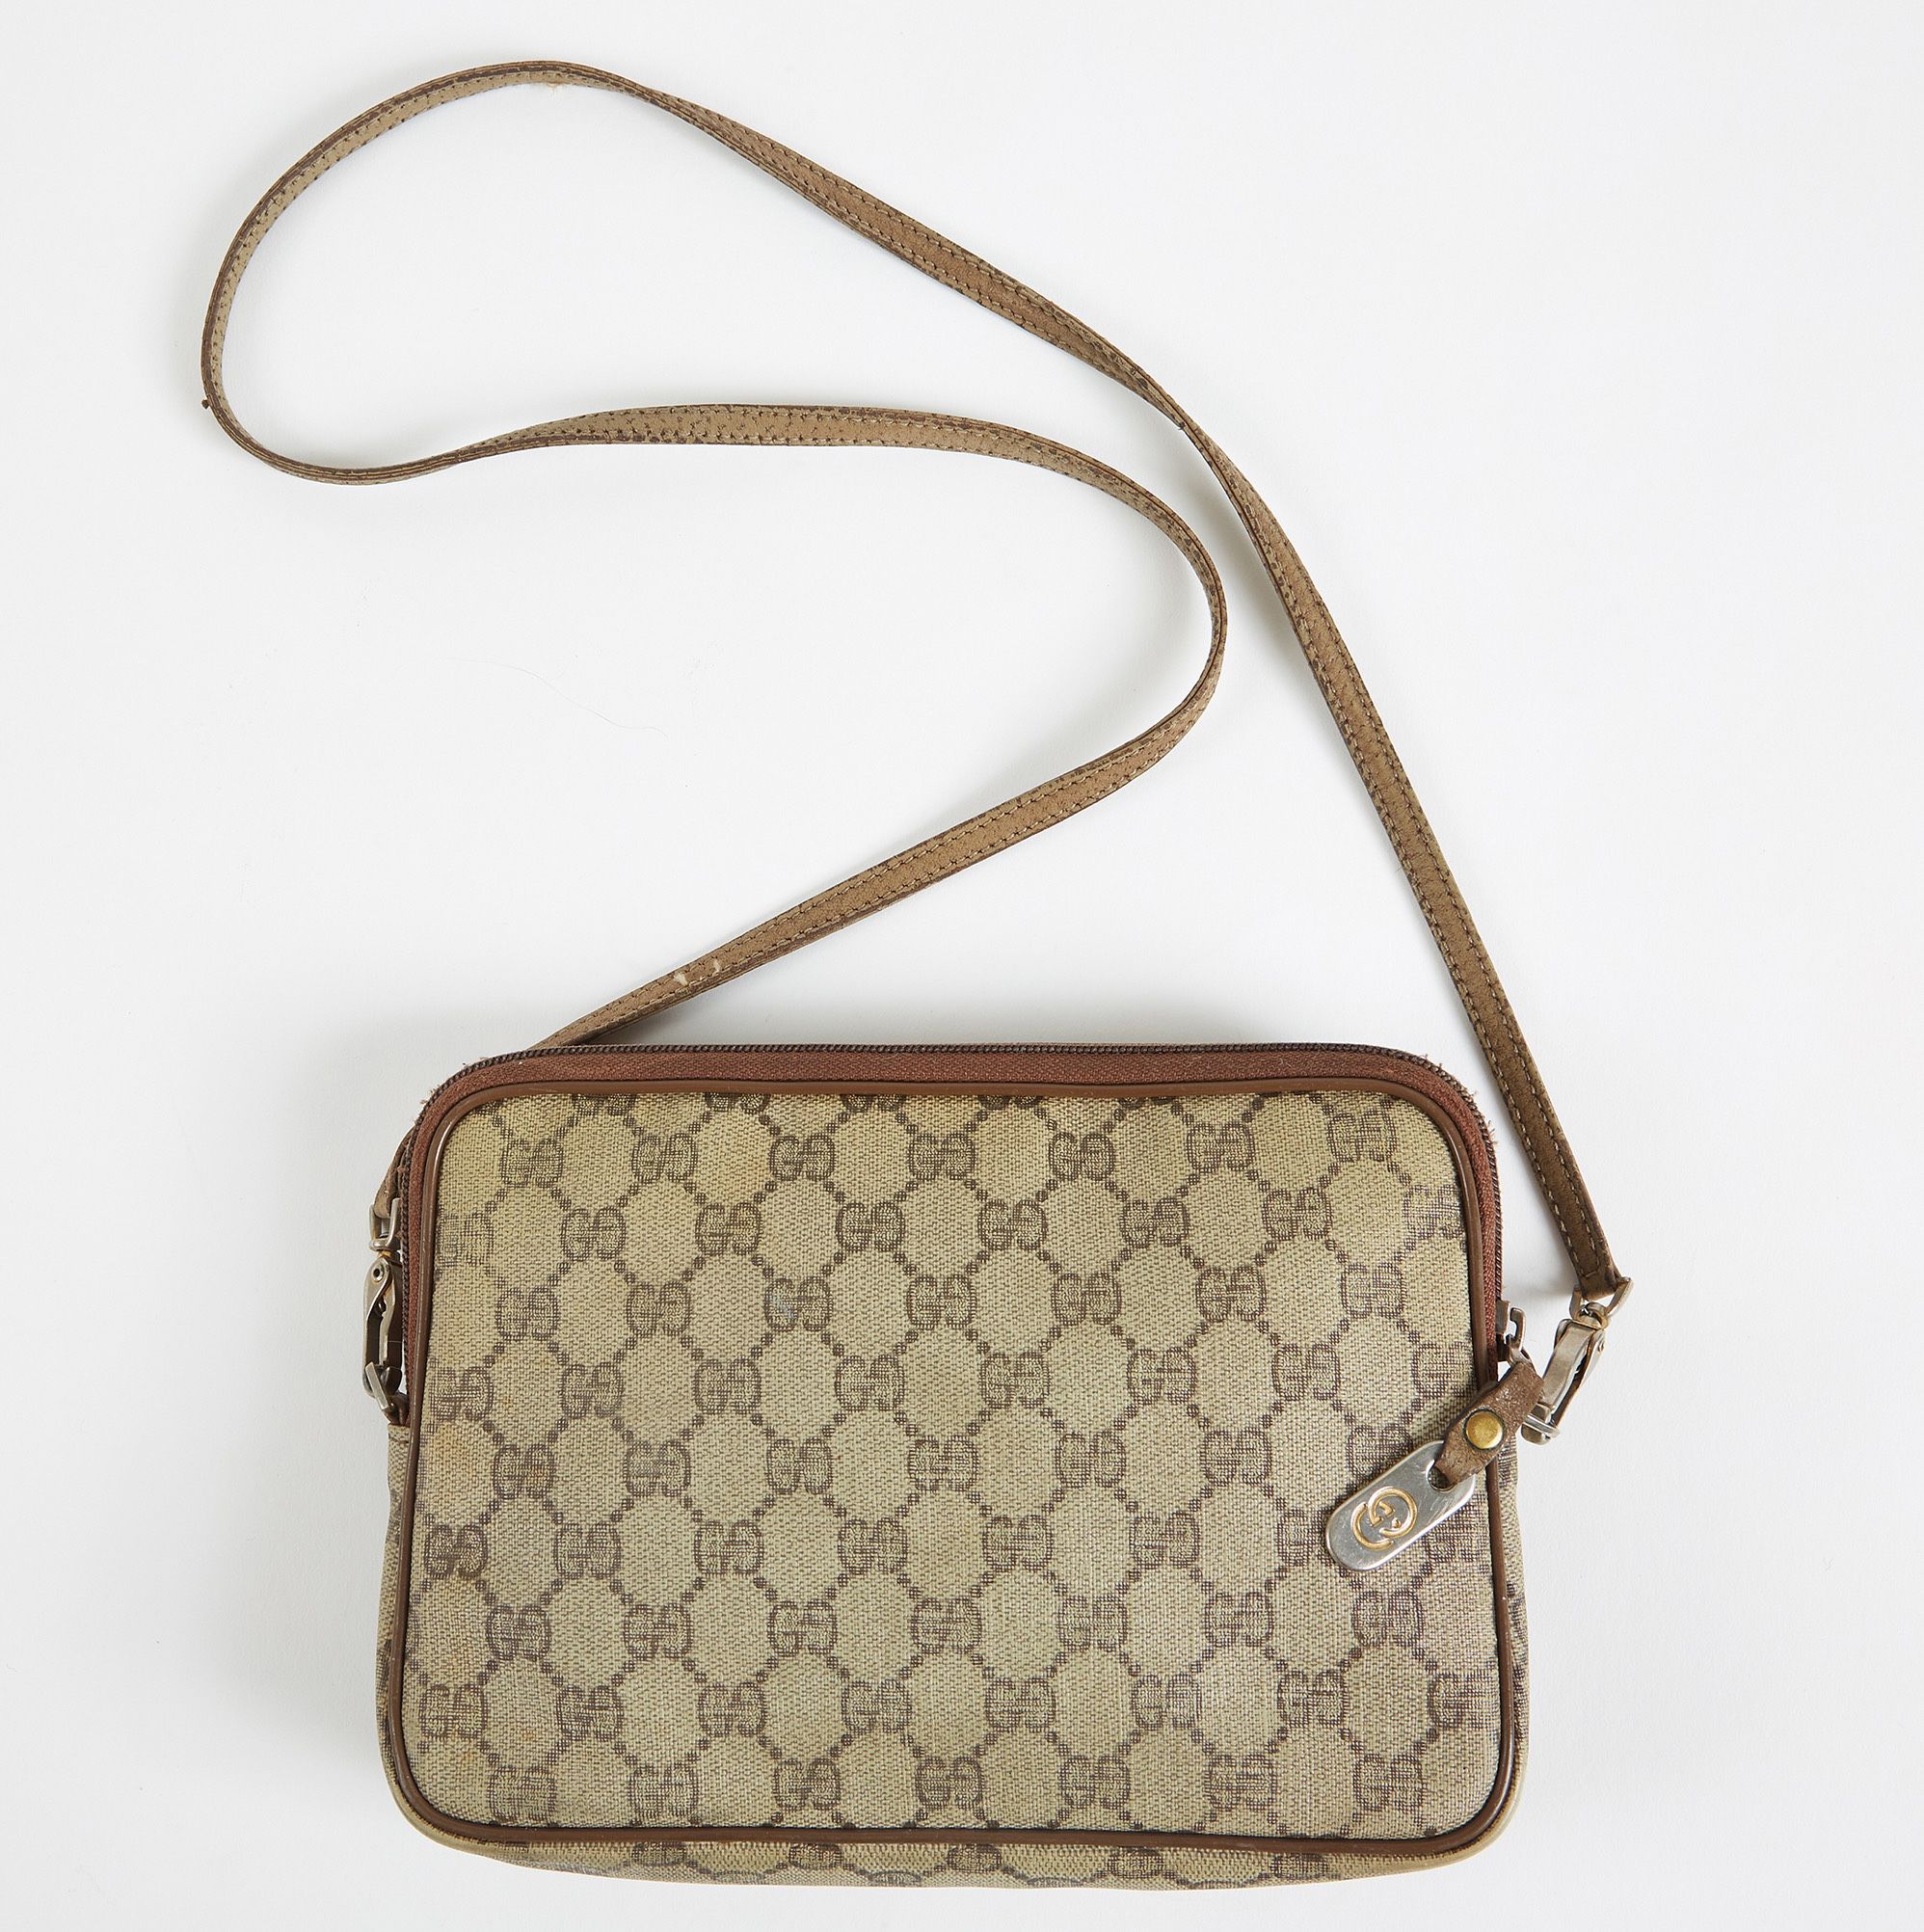 Vintage Gucci Handbag